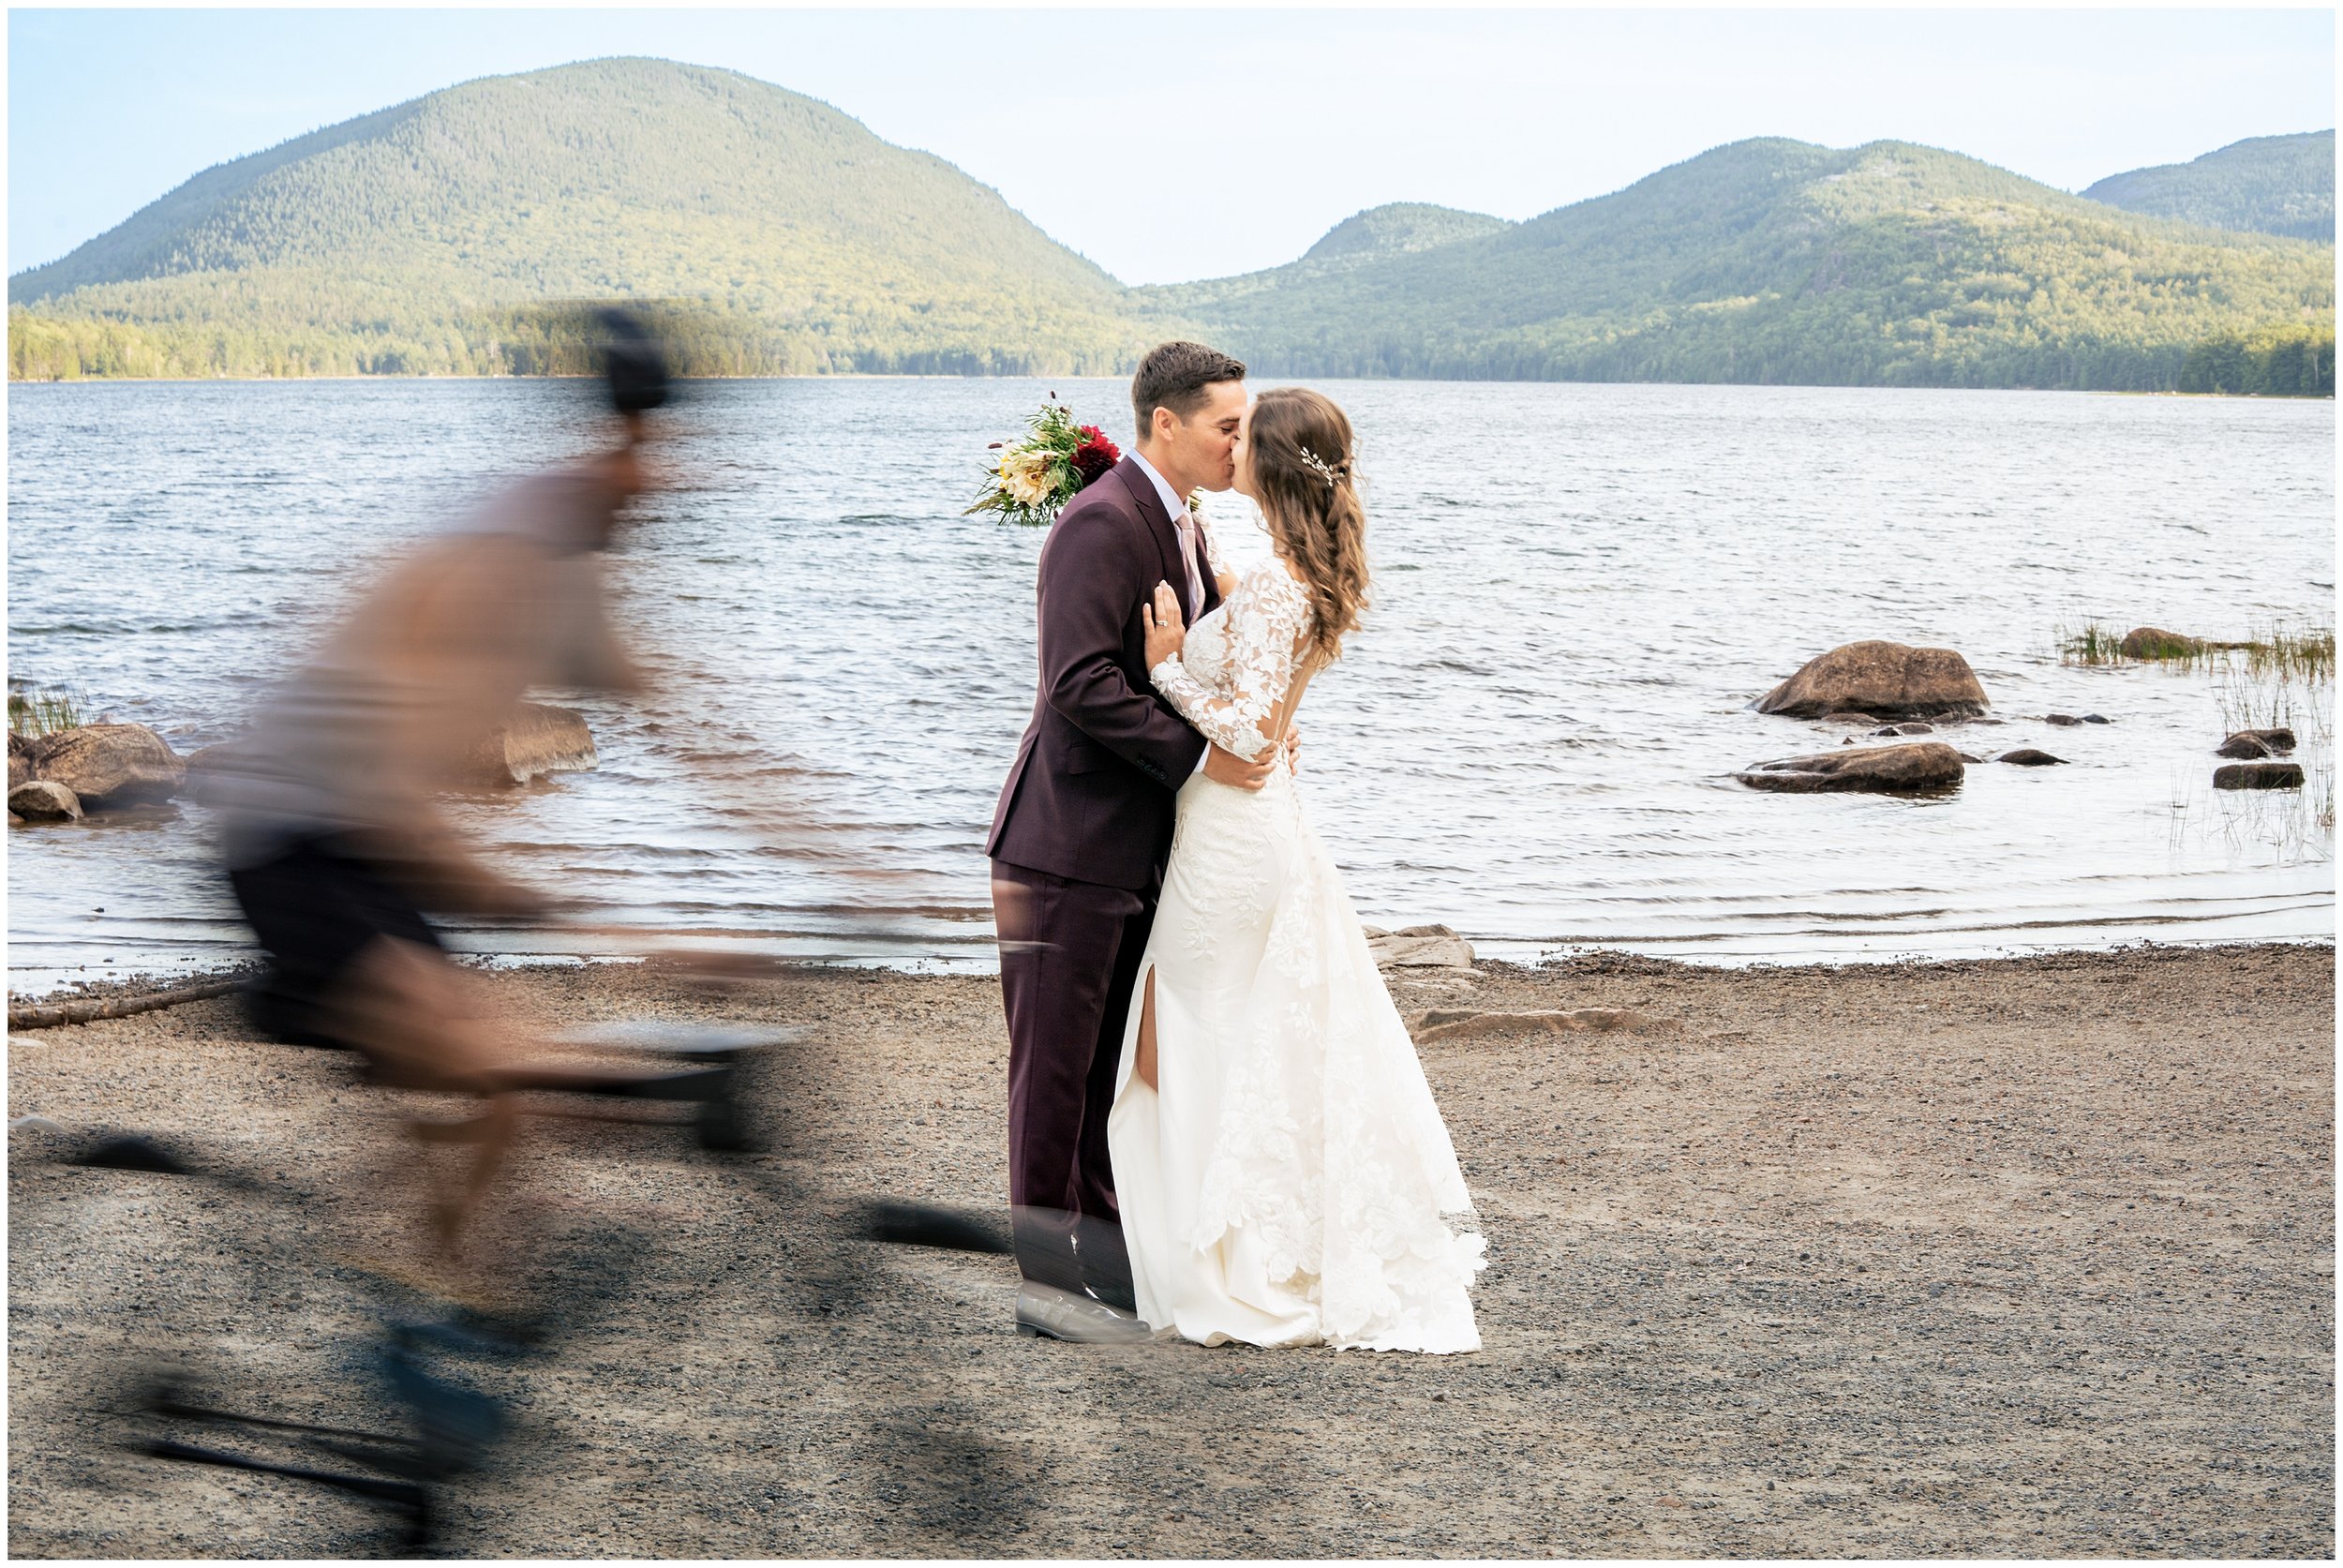 Acadia National Park Wedding Photographers, Bar Harbor Wedding Photographers, Two Adventurous Souls- 082423_0050.jpg